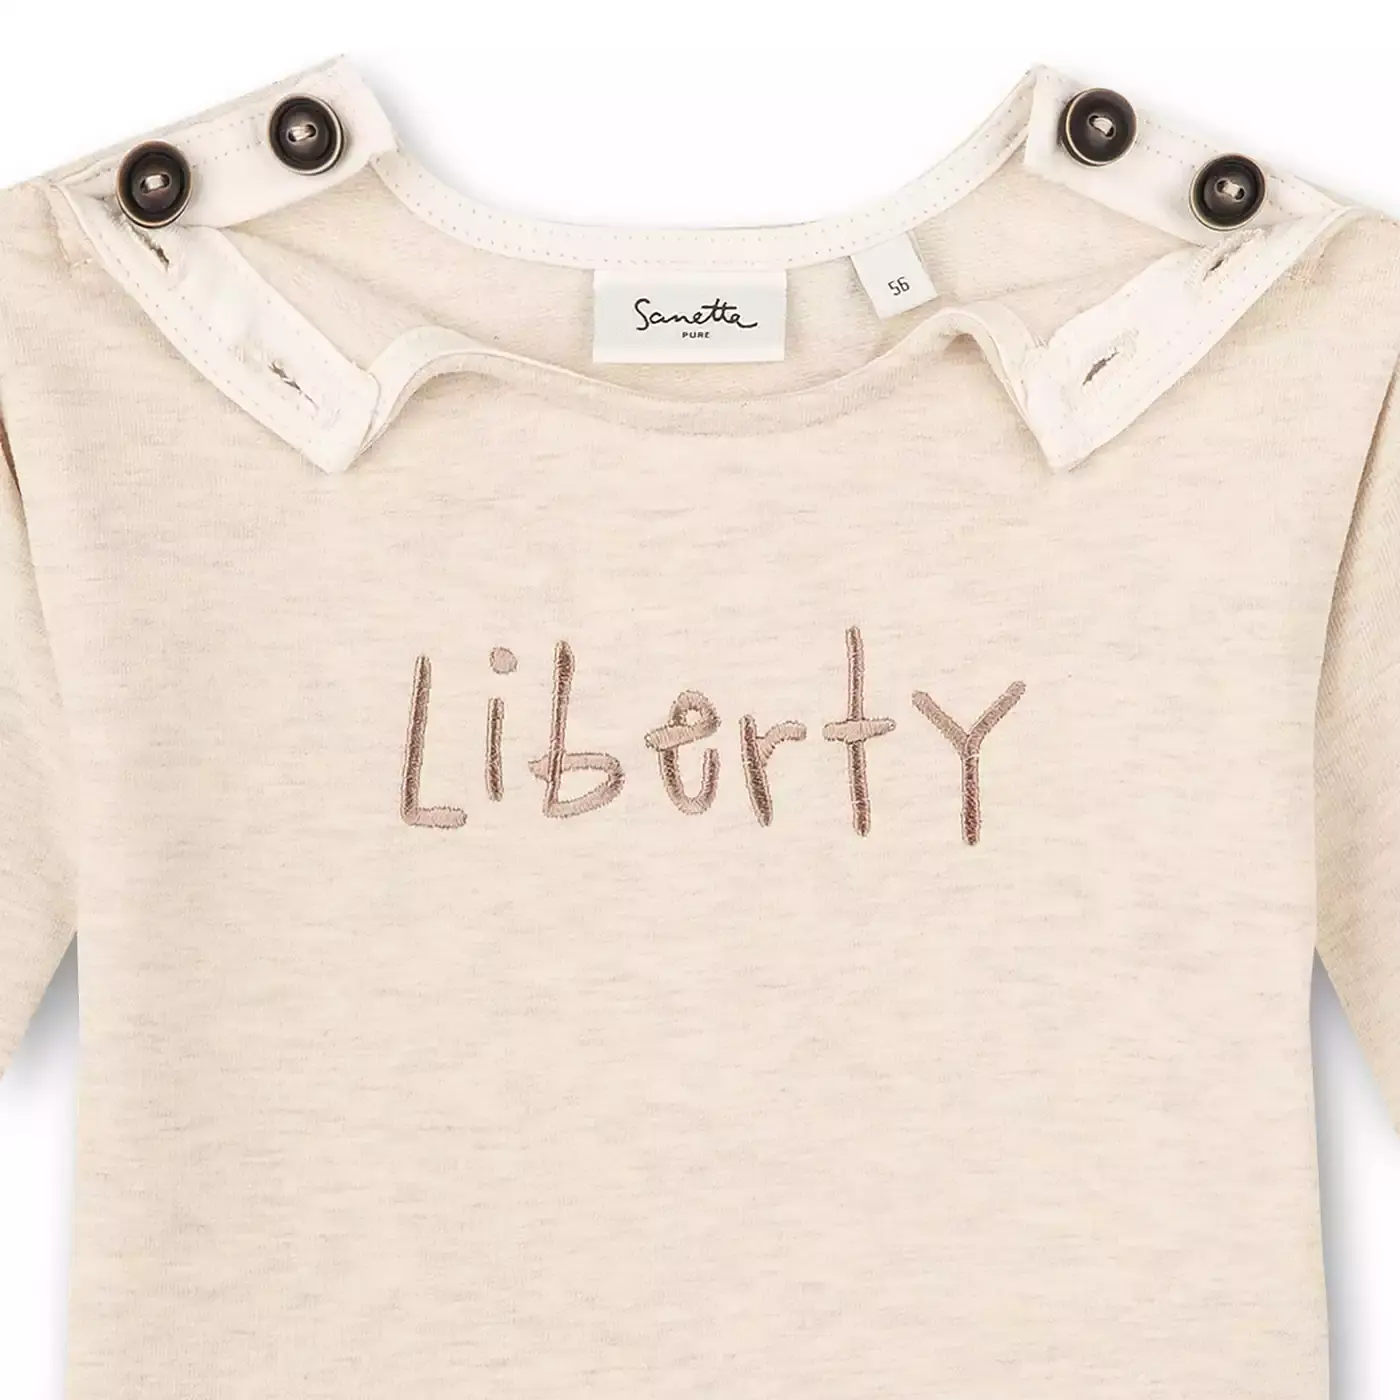 Sweatshirt Liberty Sanetta Beige 2004579865105 4